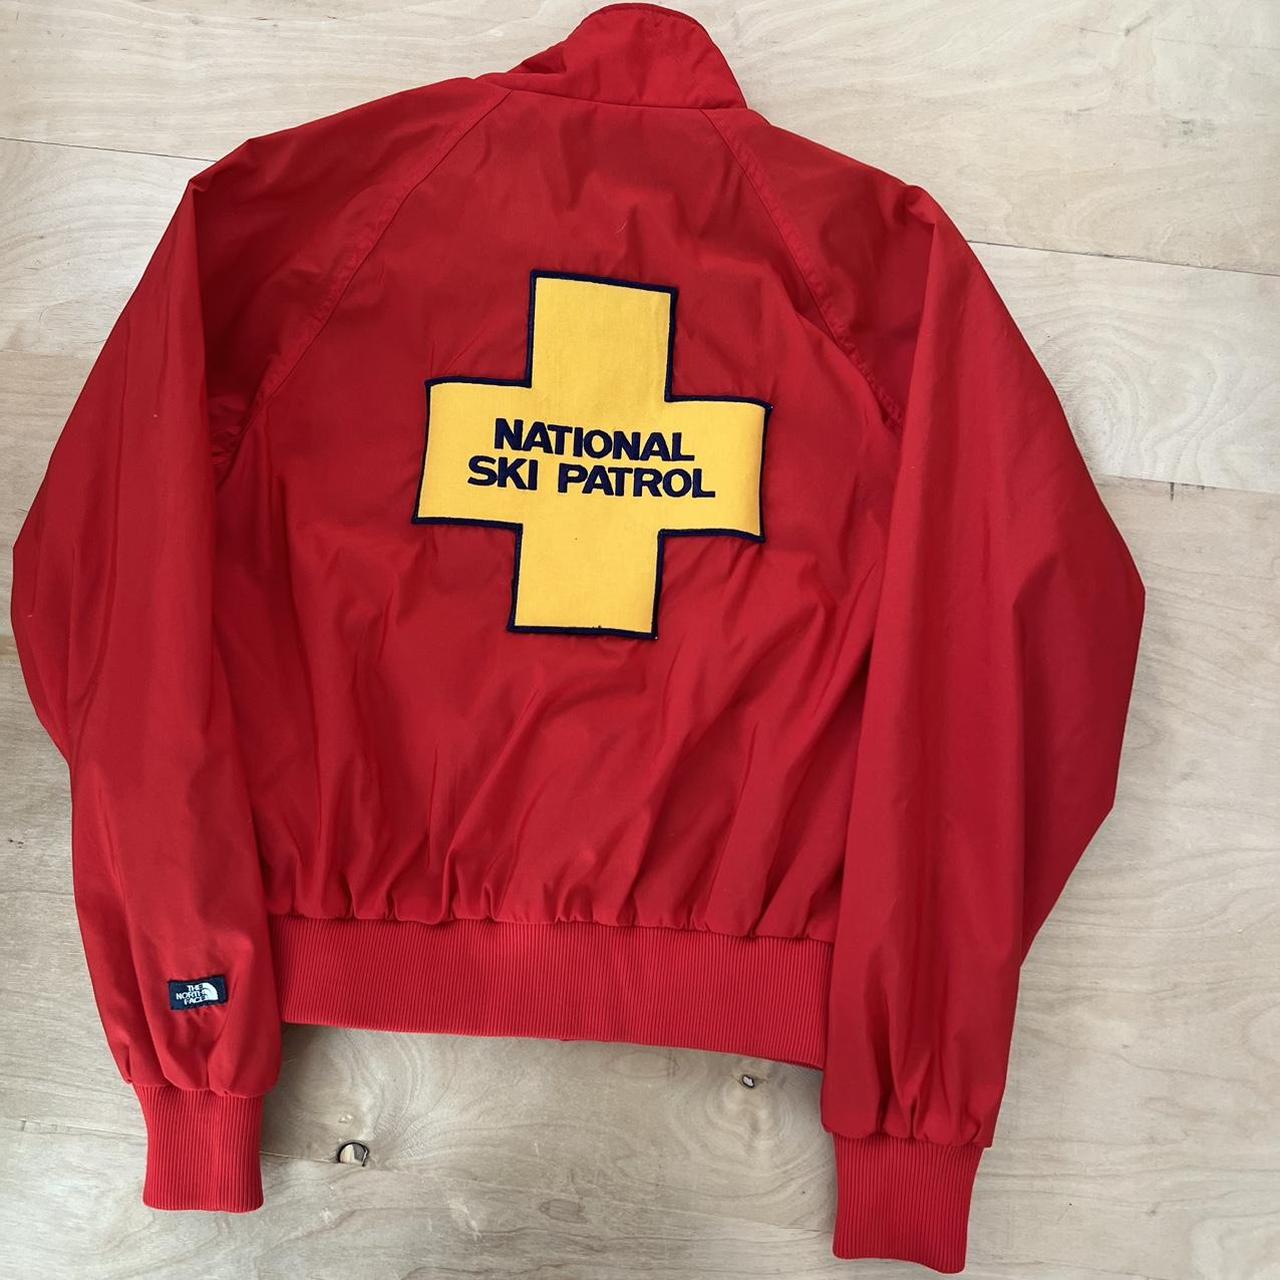 Vintage North Face National Ski Patrol Jacket Large... - Depop